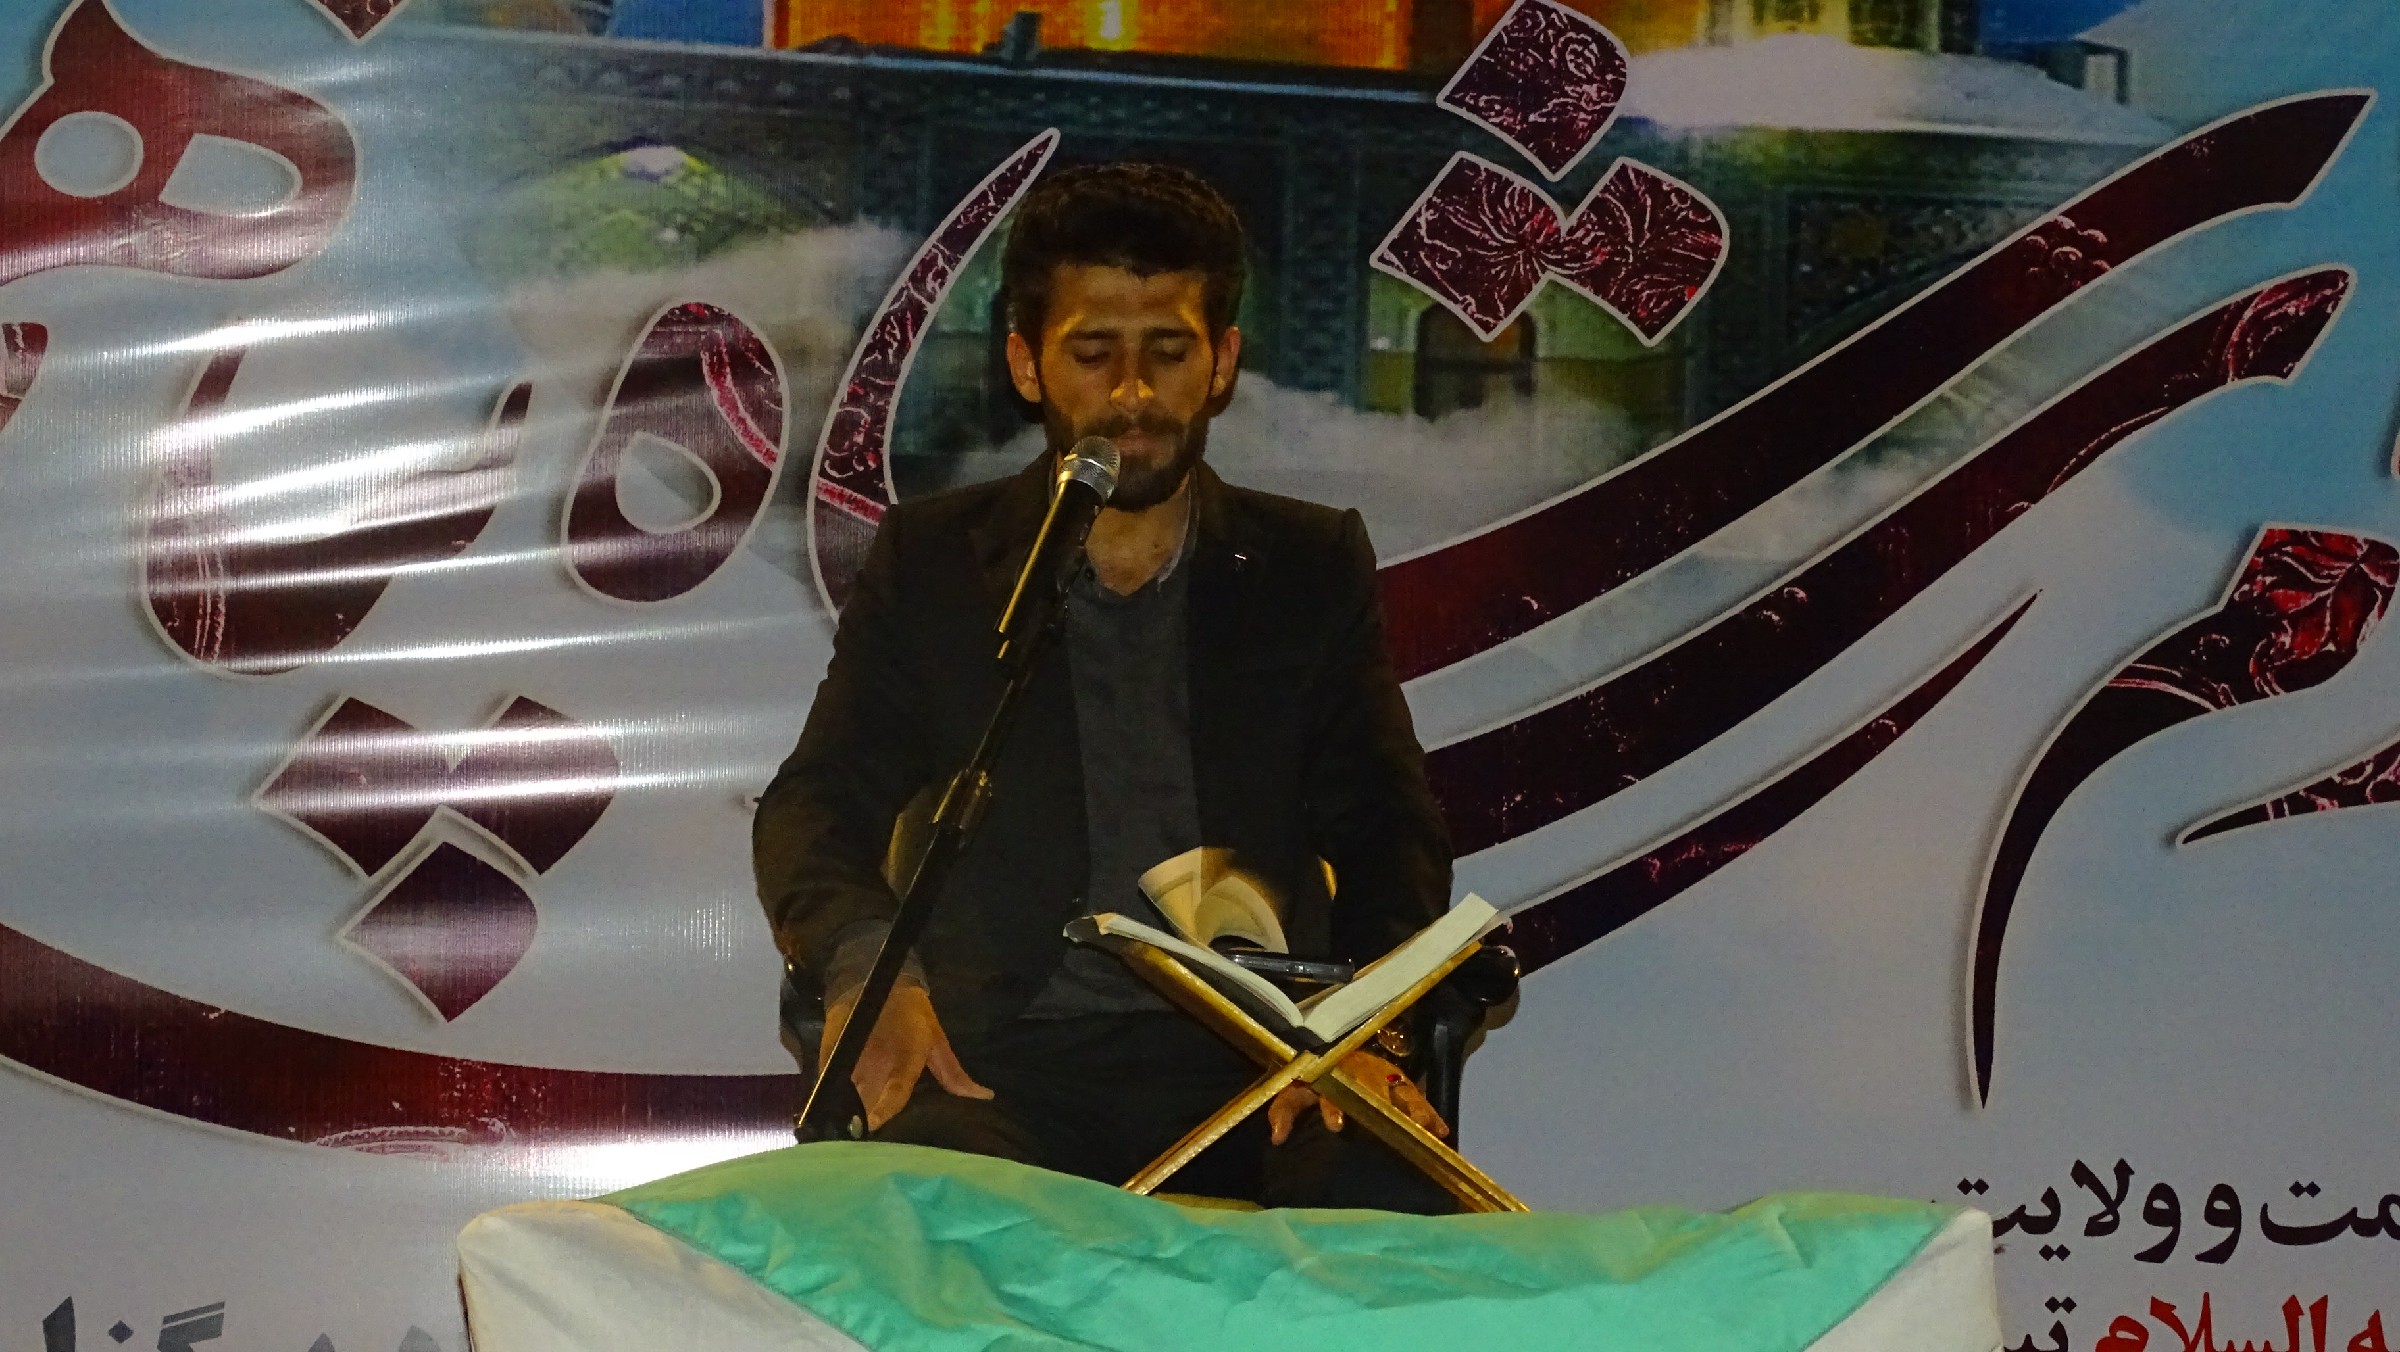  جشن میلاد امام رضا (ع) در شهرستان بهمئی با حضور پرشور مردم و مسئولین برگزار گردید + عکس